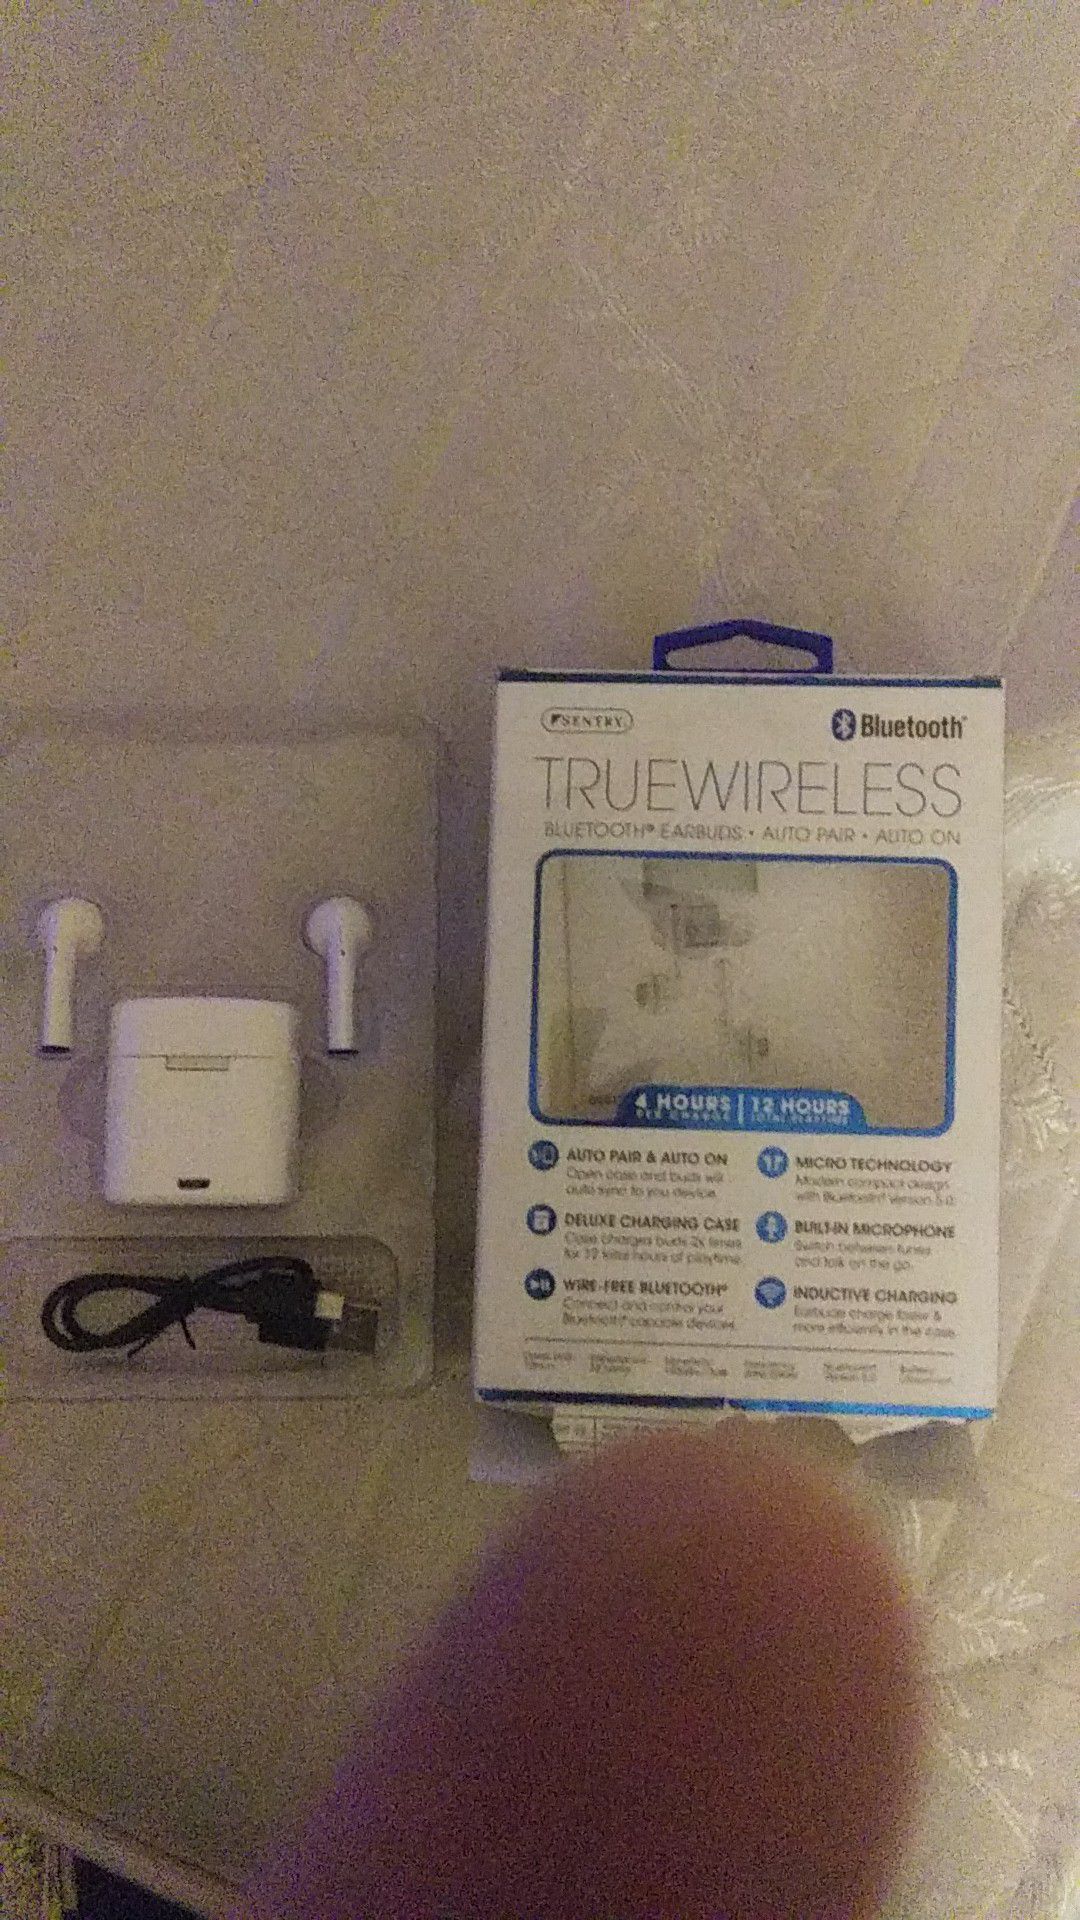 Sentry TrueWireless Bluetooth headphones